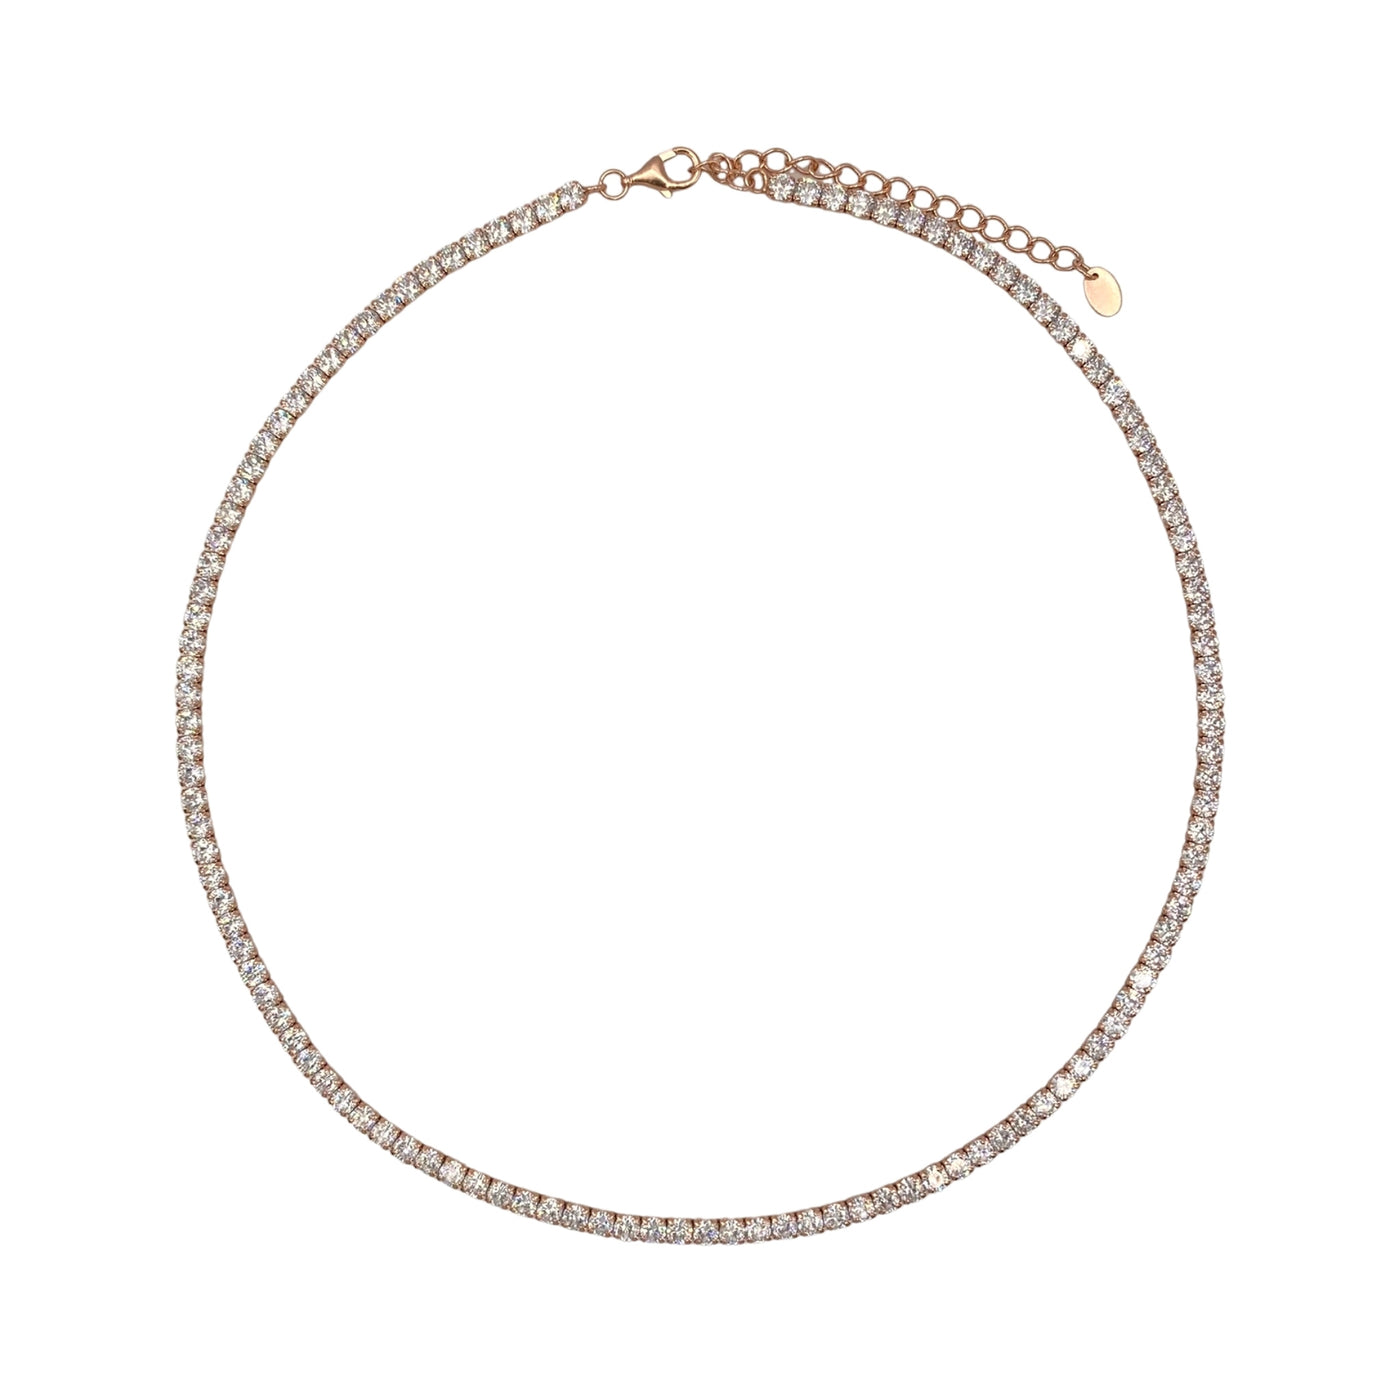 Silver machine tennis necklace - 3 mm